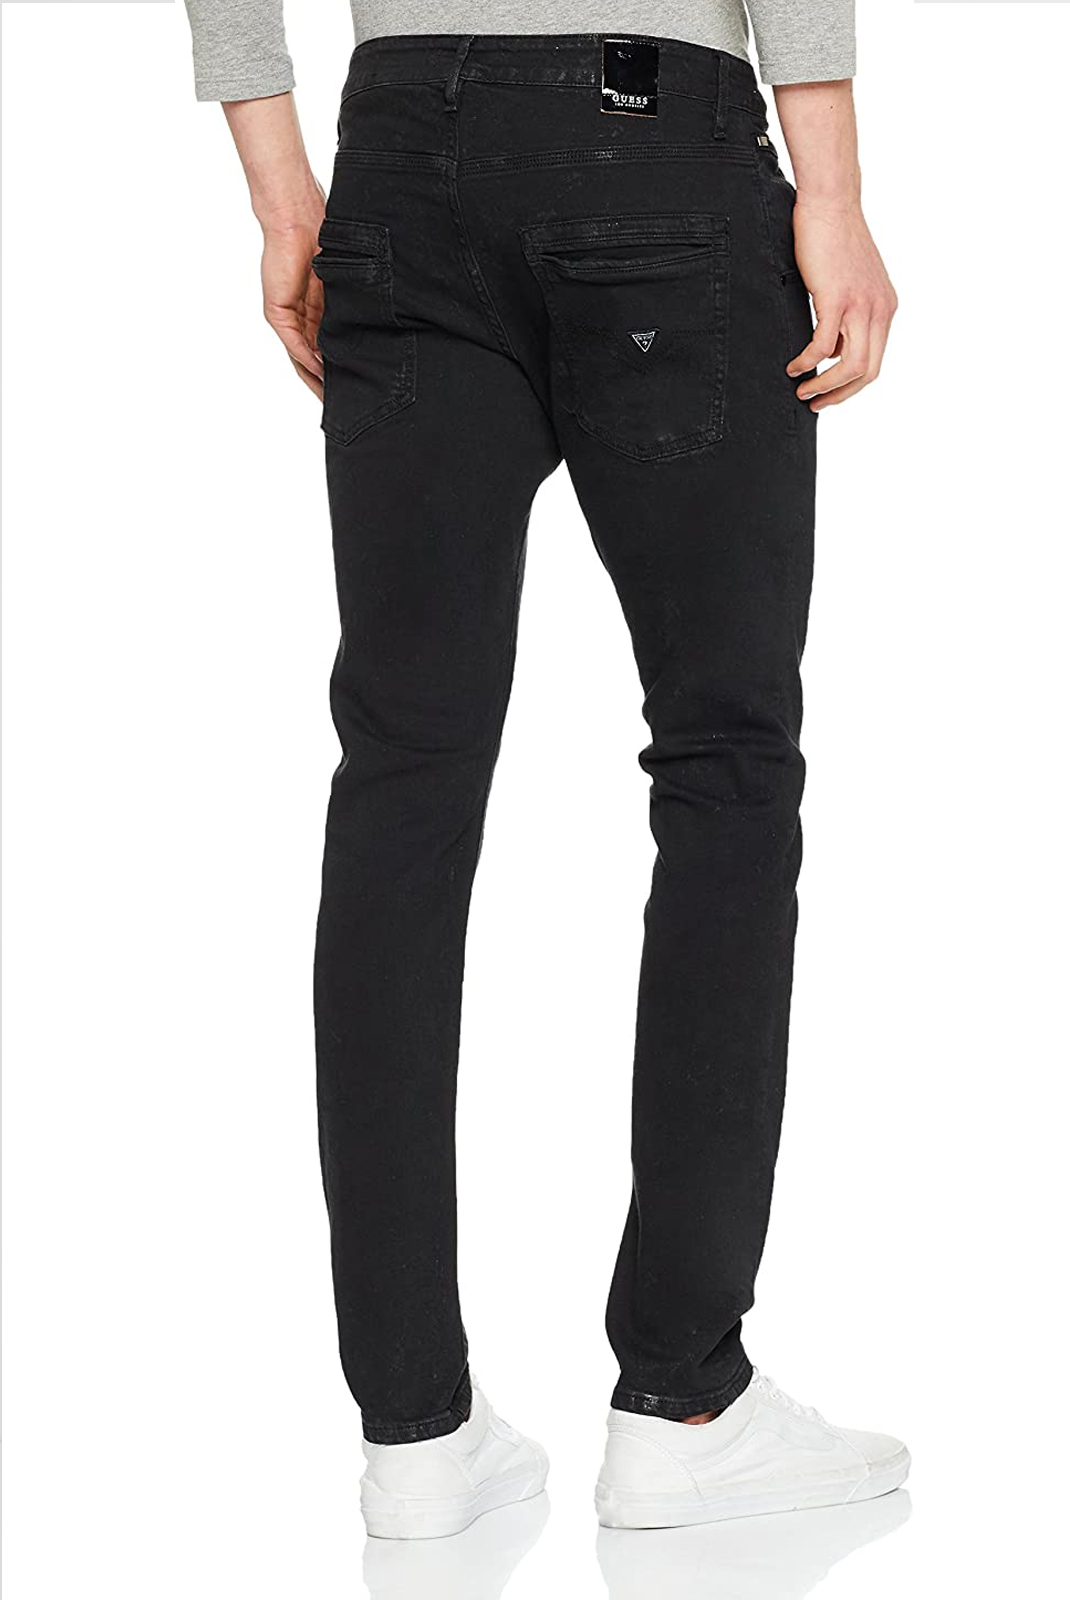 Jeans slim noir homme Guess - M81a05